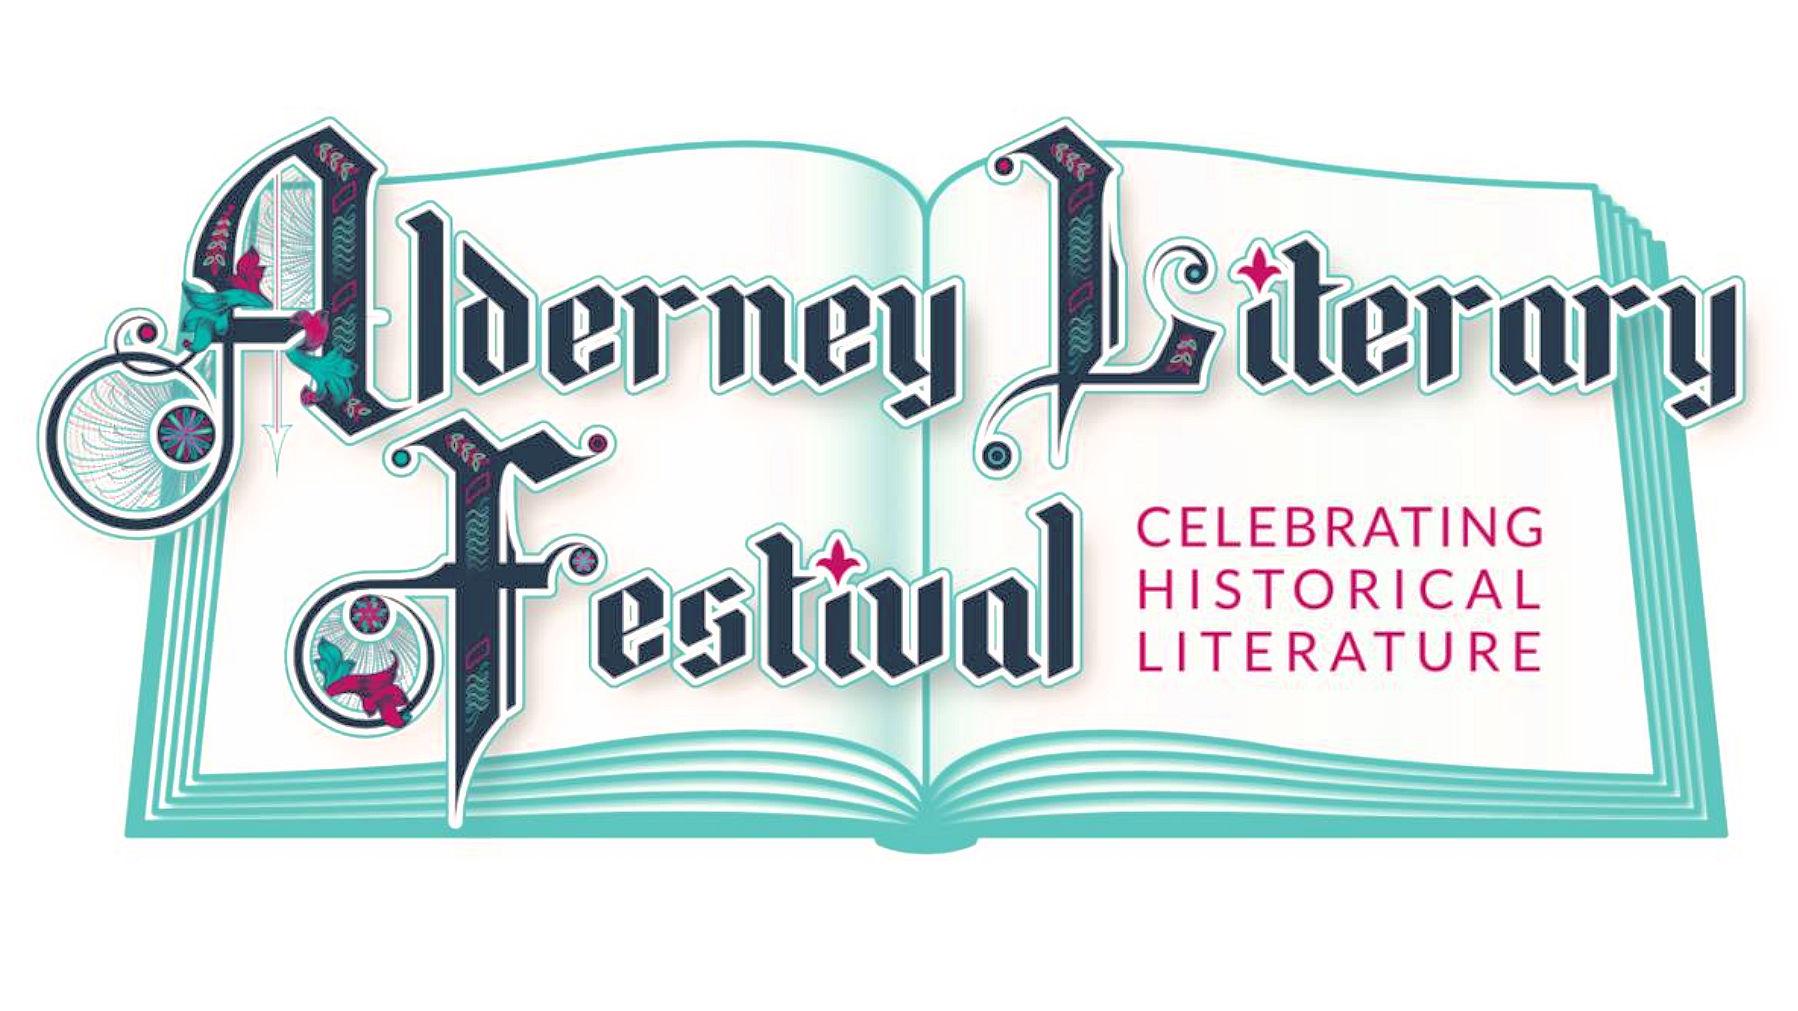 Alderney Literary Festival